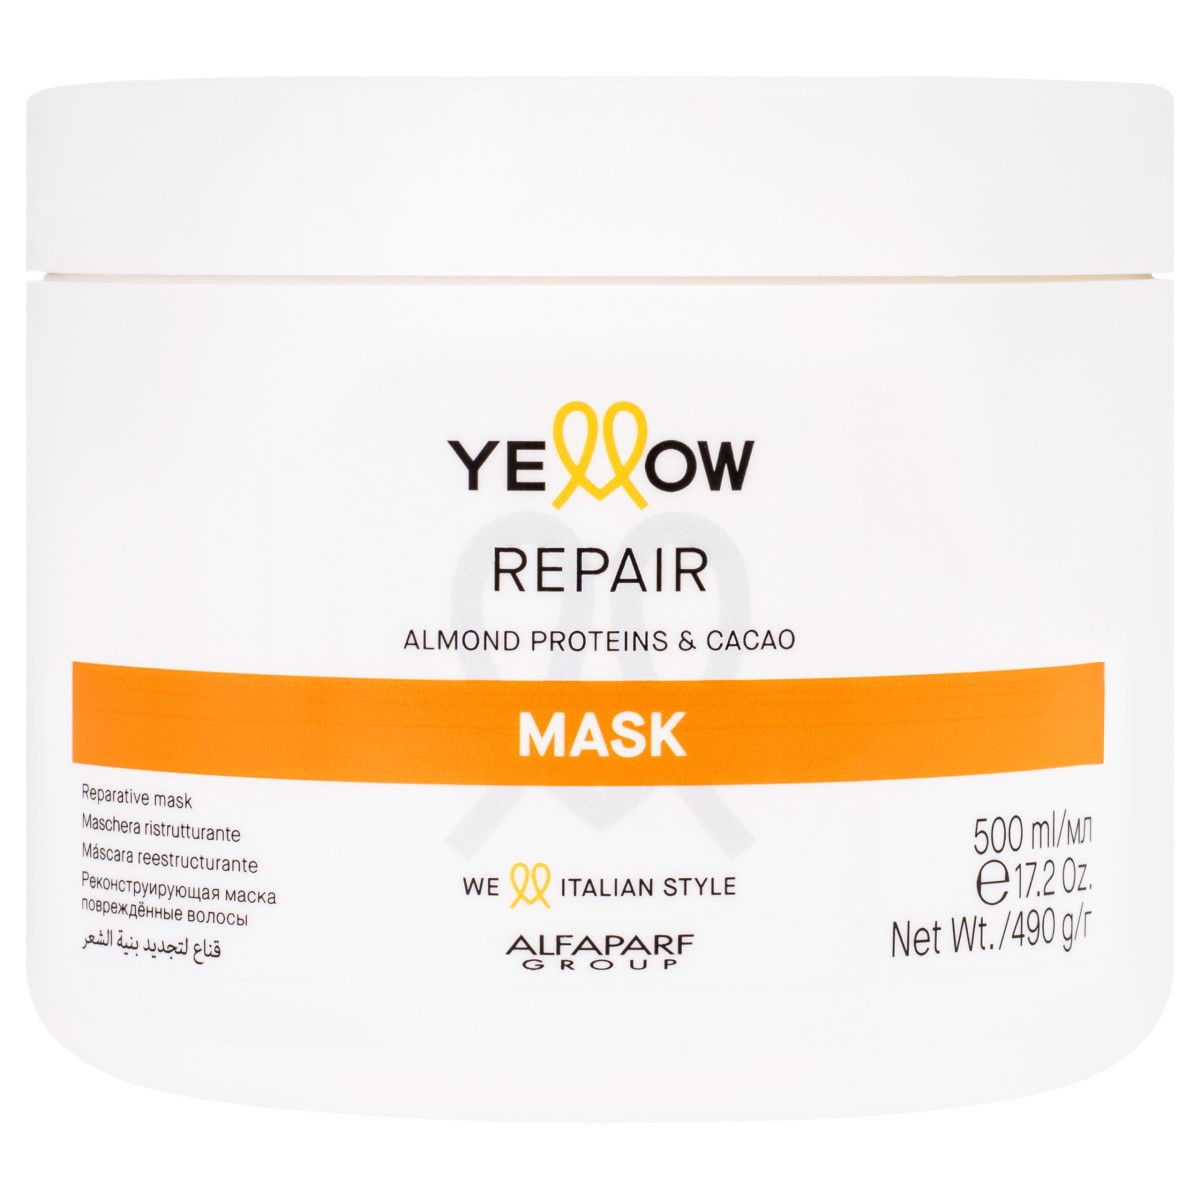 Alfaparf YELLOW Repair - maska odżywiająca i regenerująca do włosów zniszczonych, 500ml